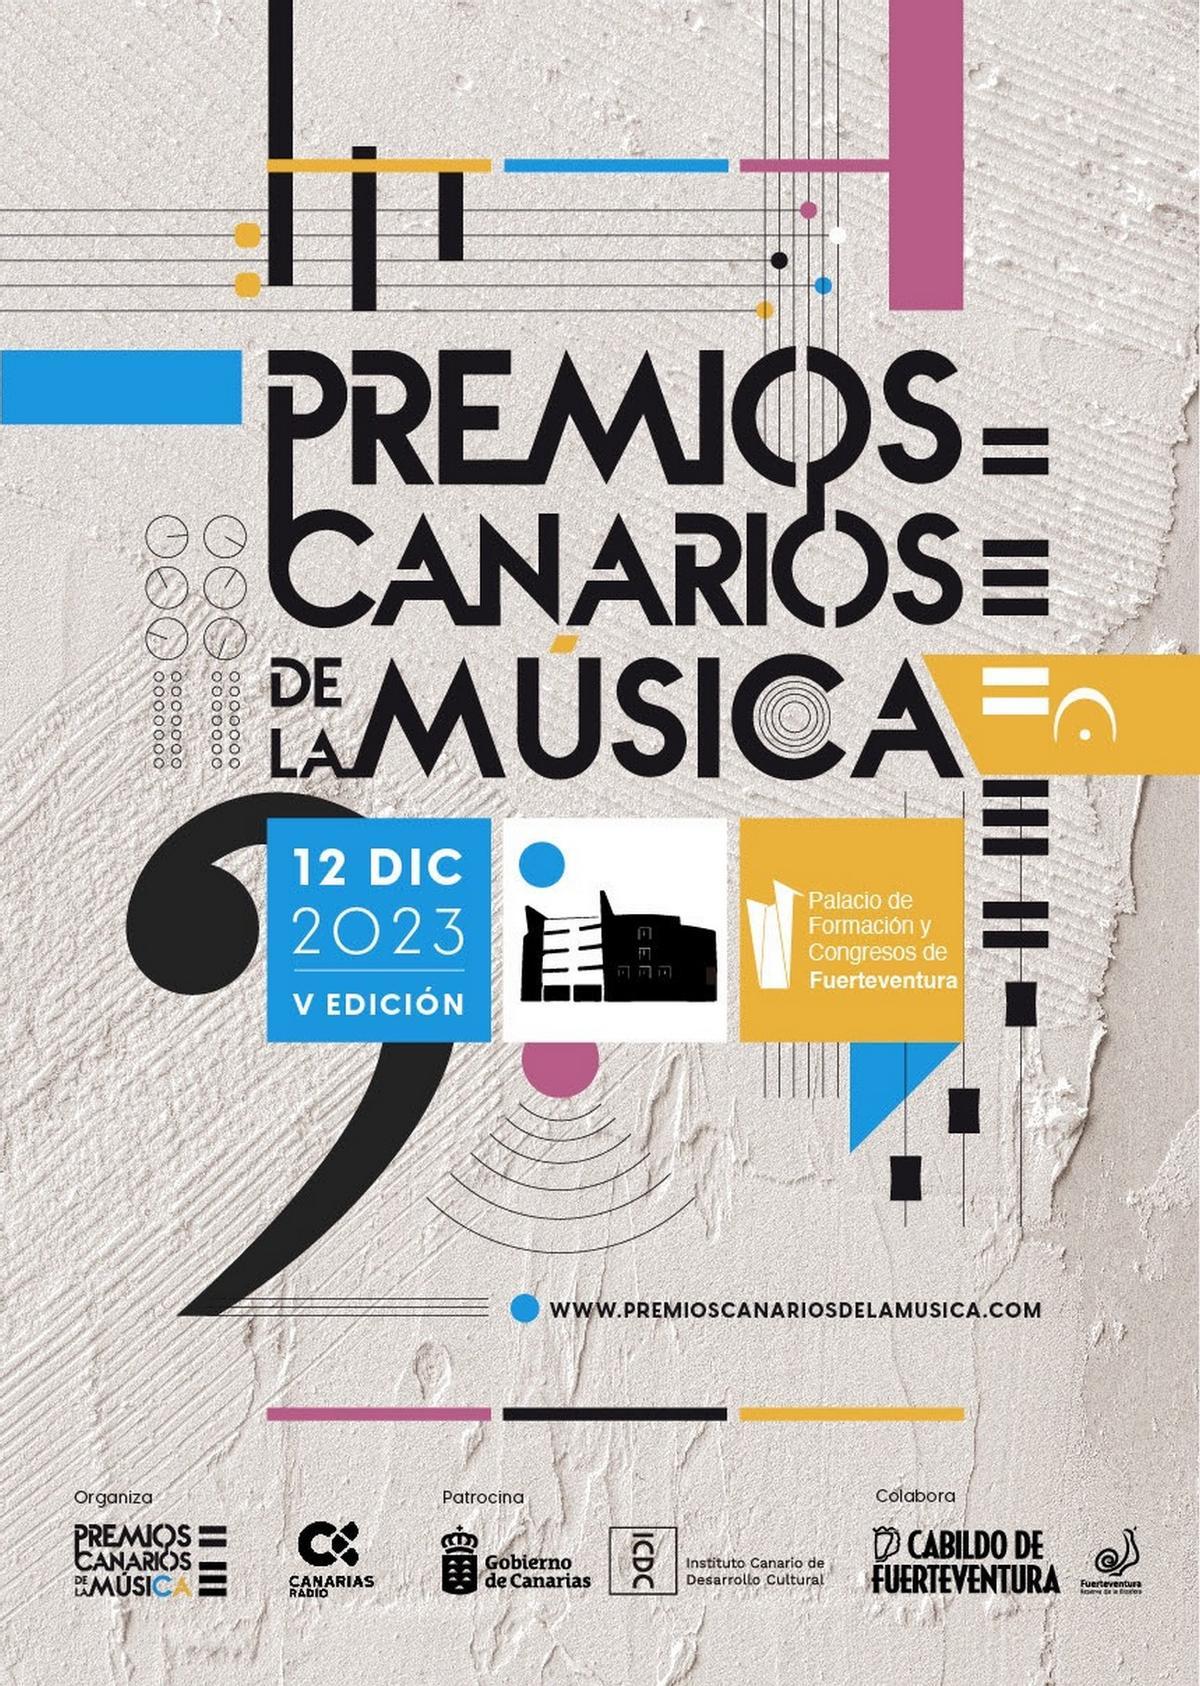 Los Premios Canarios de la Música designa a los nominados a su quinta edición que se celebrará en Fuerteventura.